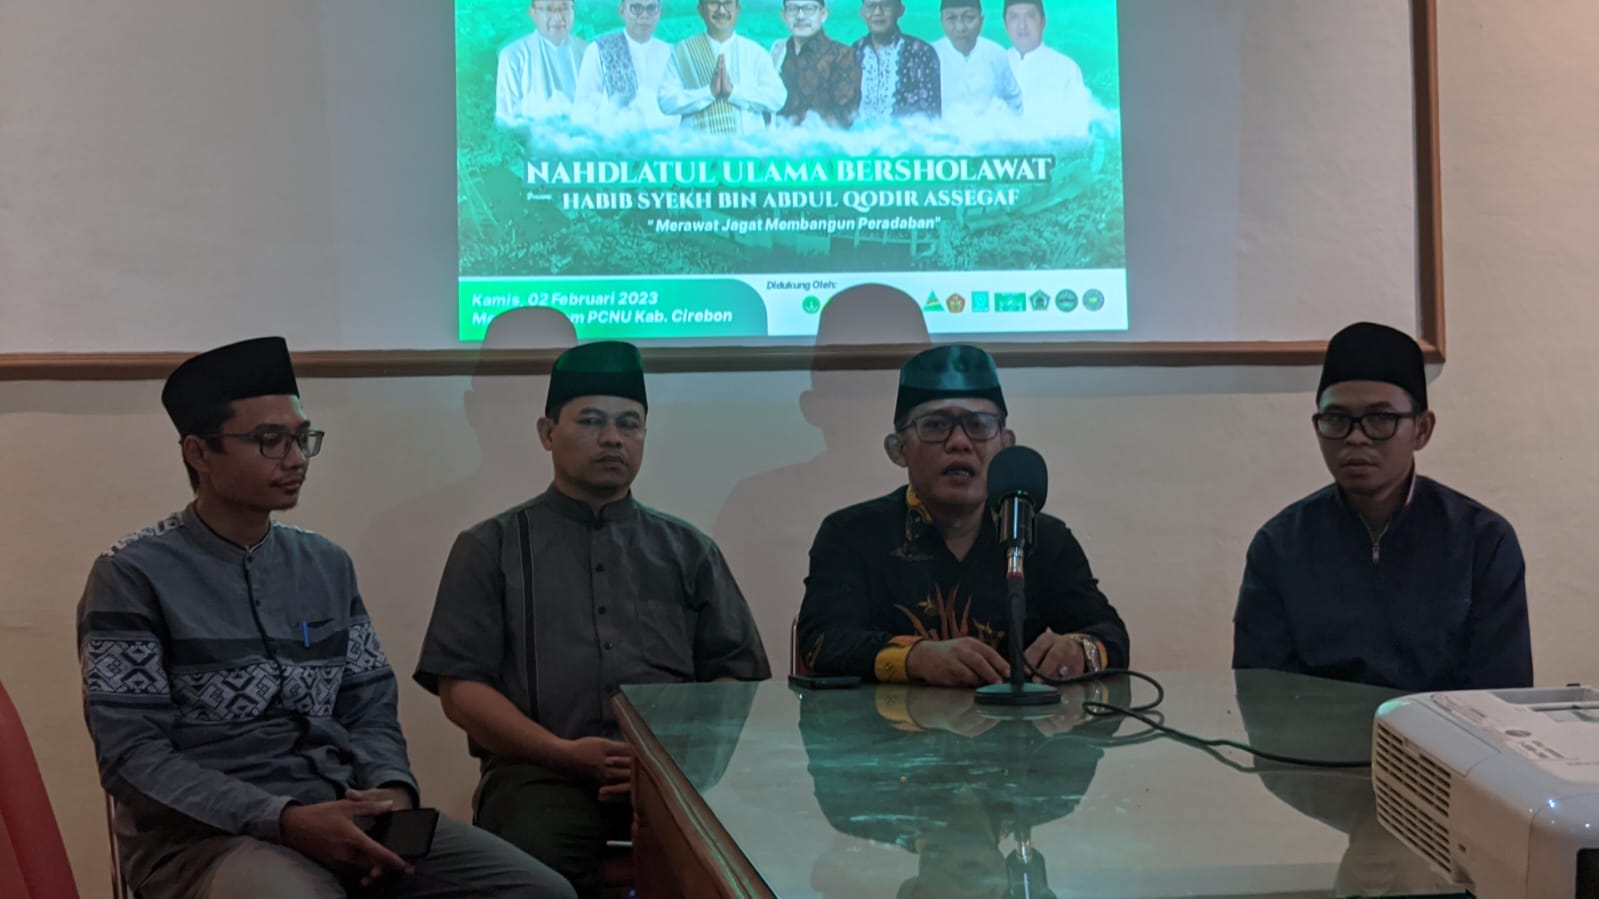 Satu Abad NU, PCNU Kabupaten Cirebon Gelar Nahdlatul Ulama Bersholawat